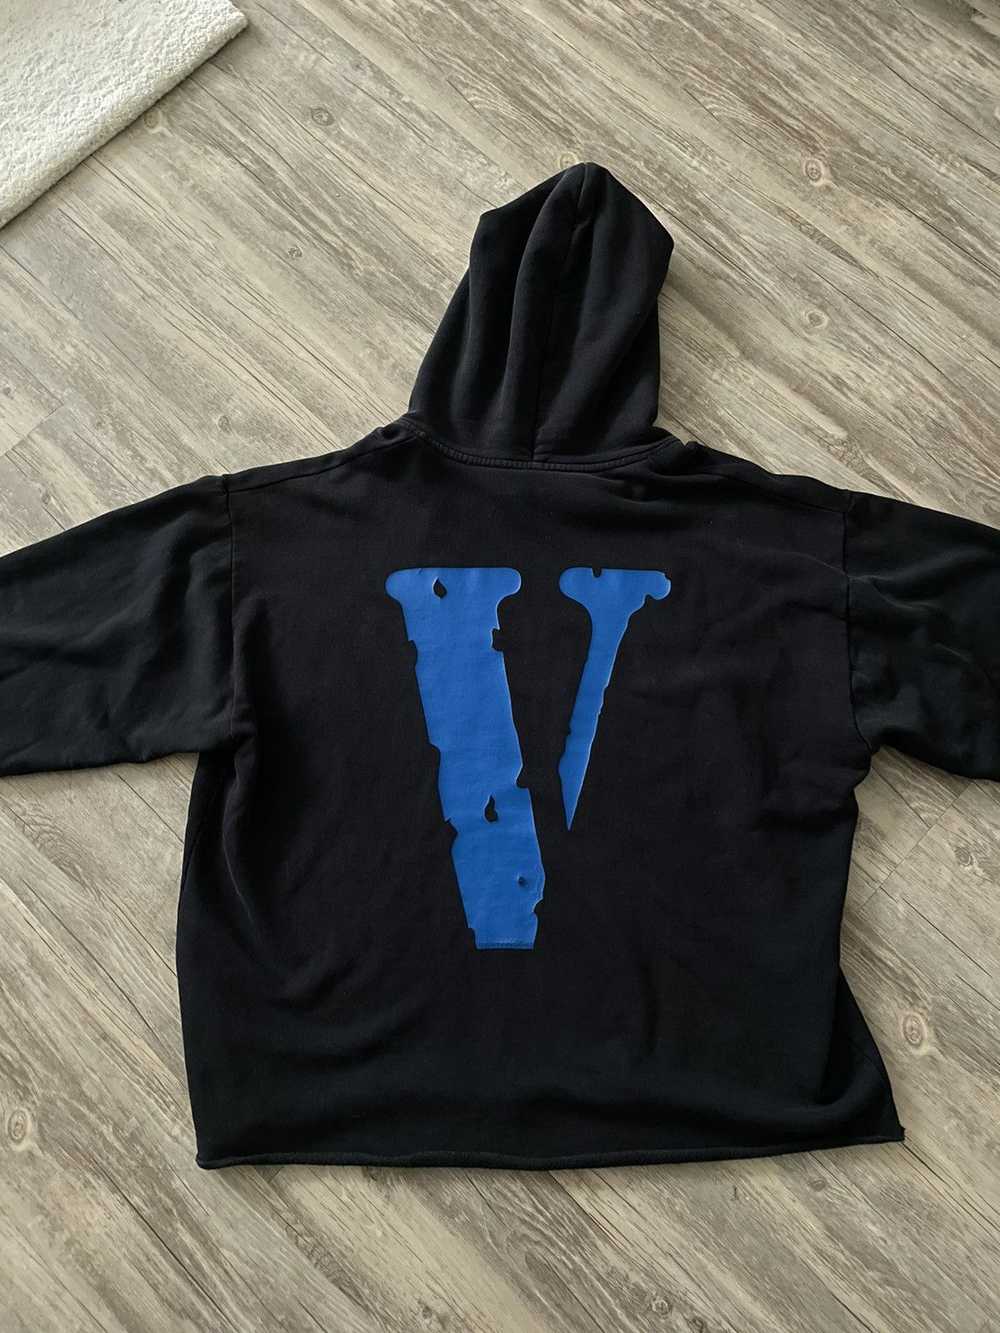 Vlone Vlone og blue hoodie - image 3